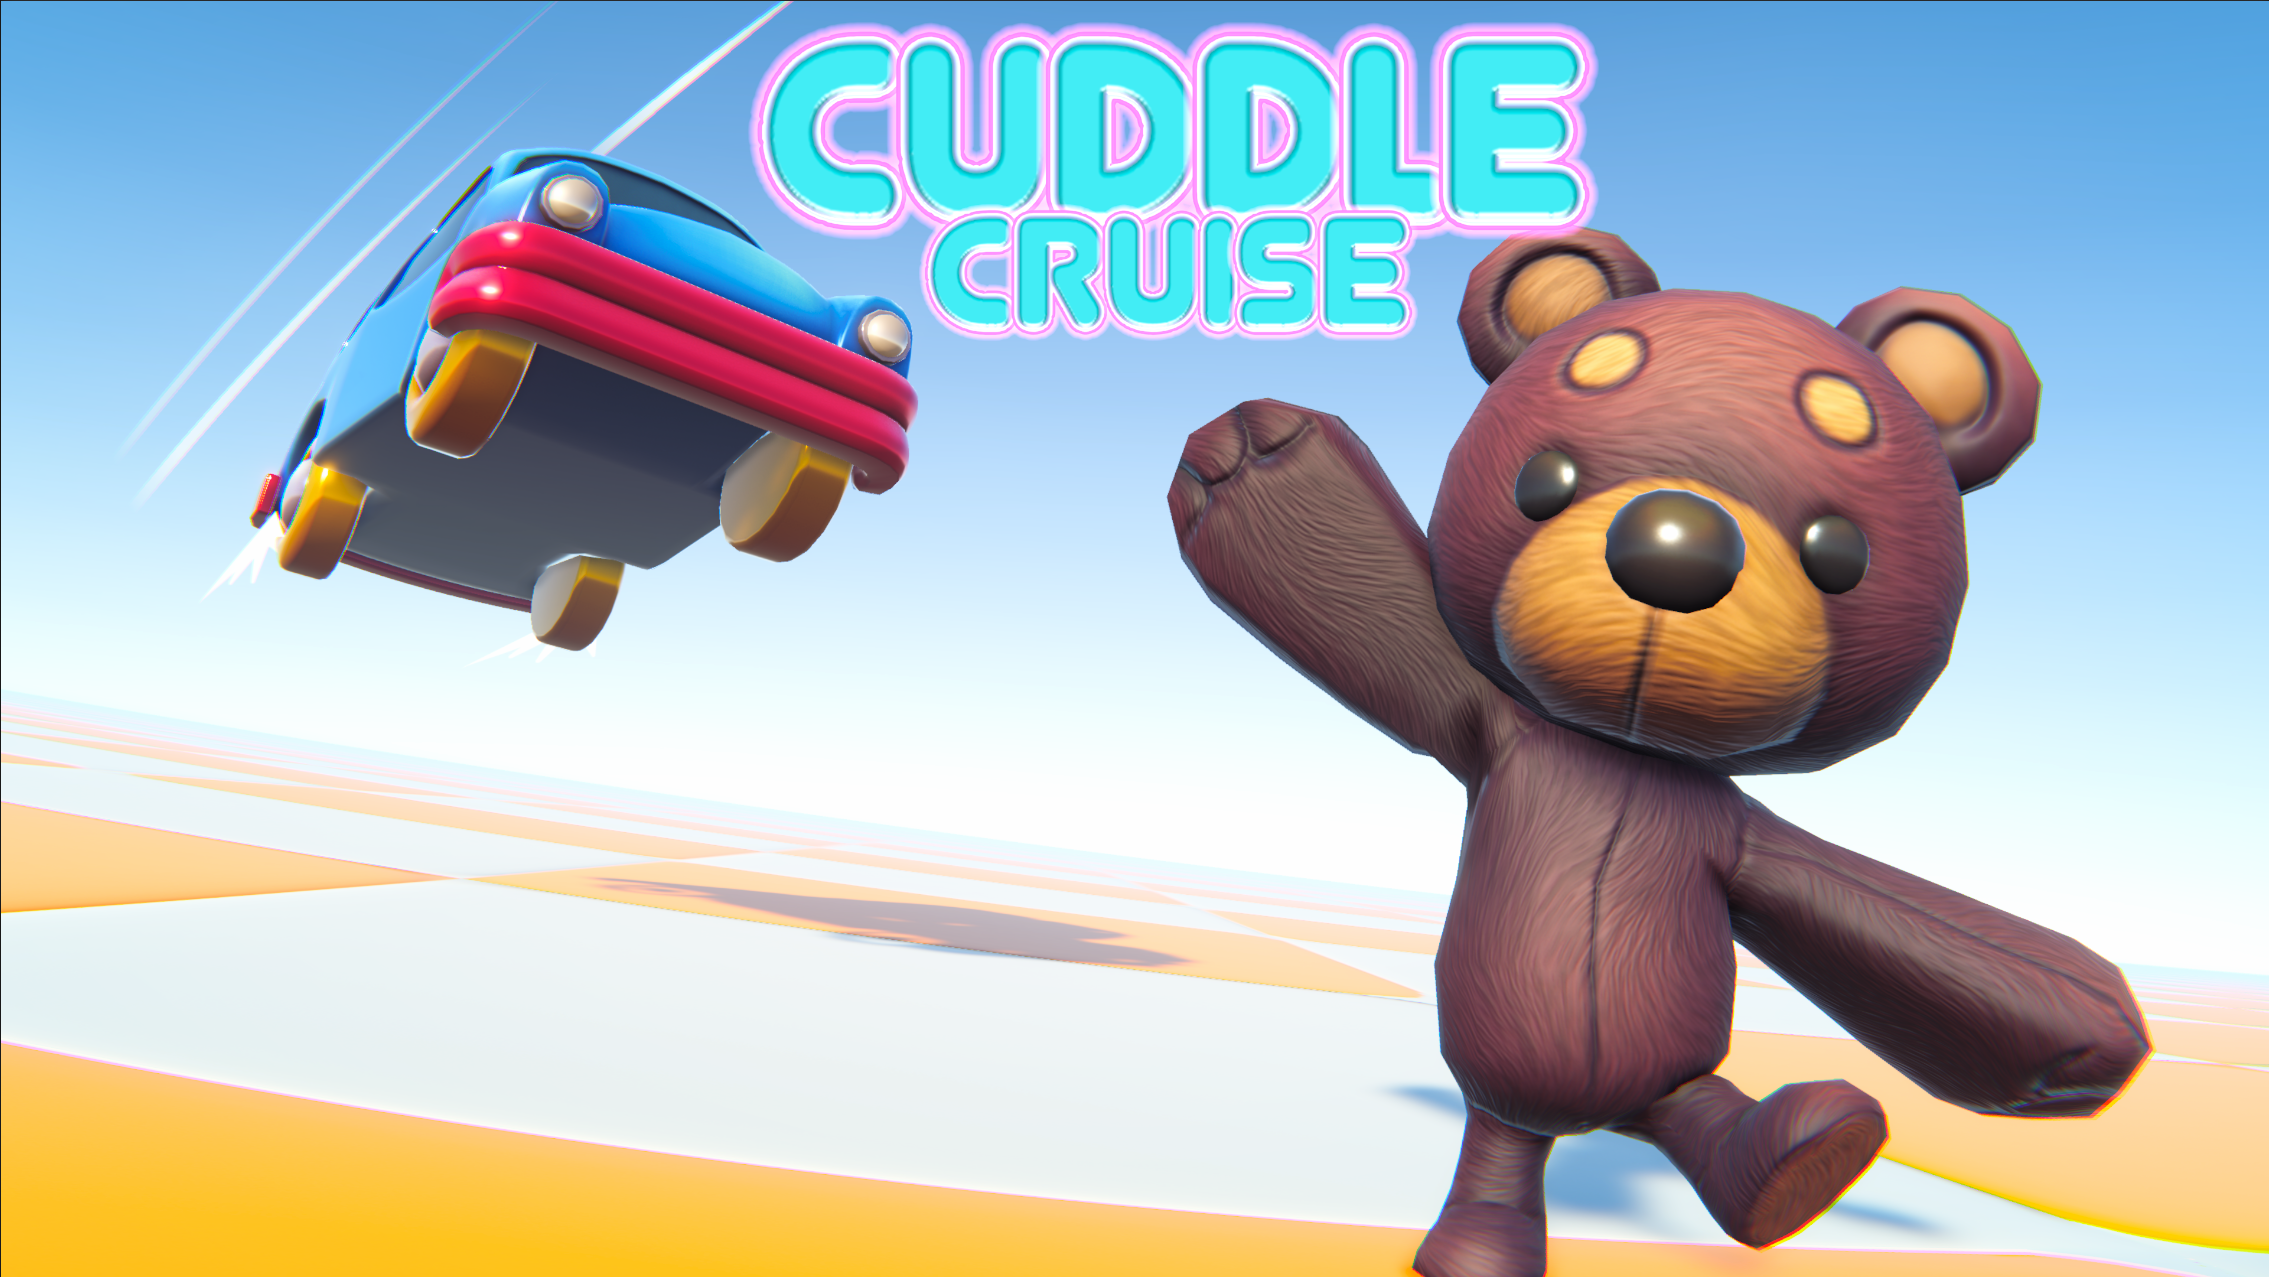 Cuddle Cruise